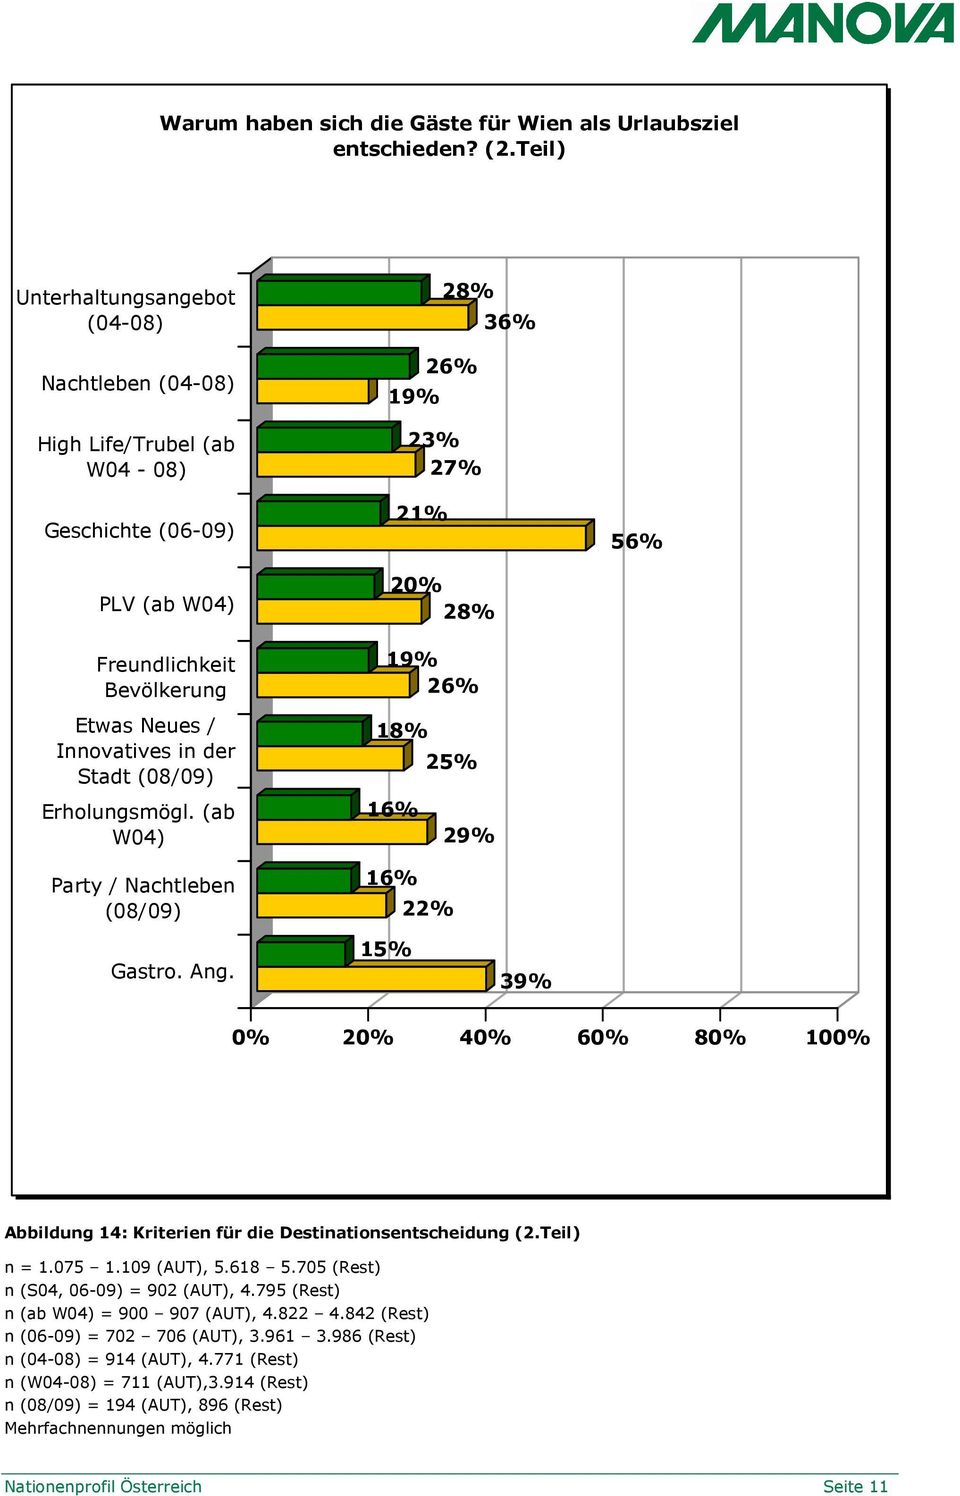 20% 28% 19% 26% 18% 28% 26% 23% 27% 25% 36% 56% Erholungsmögl. (ab W04) 16% 29% Party / Nachtleben (08/09) Gastro. Ang.